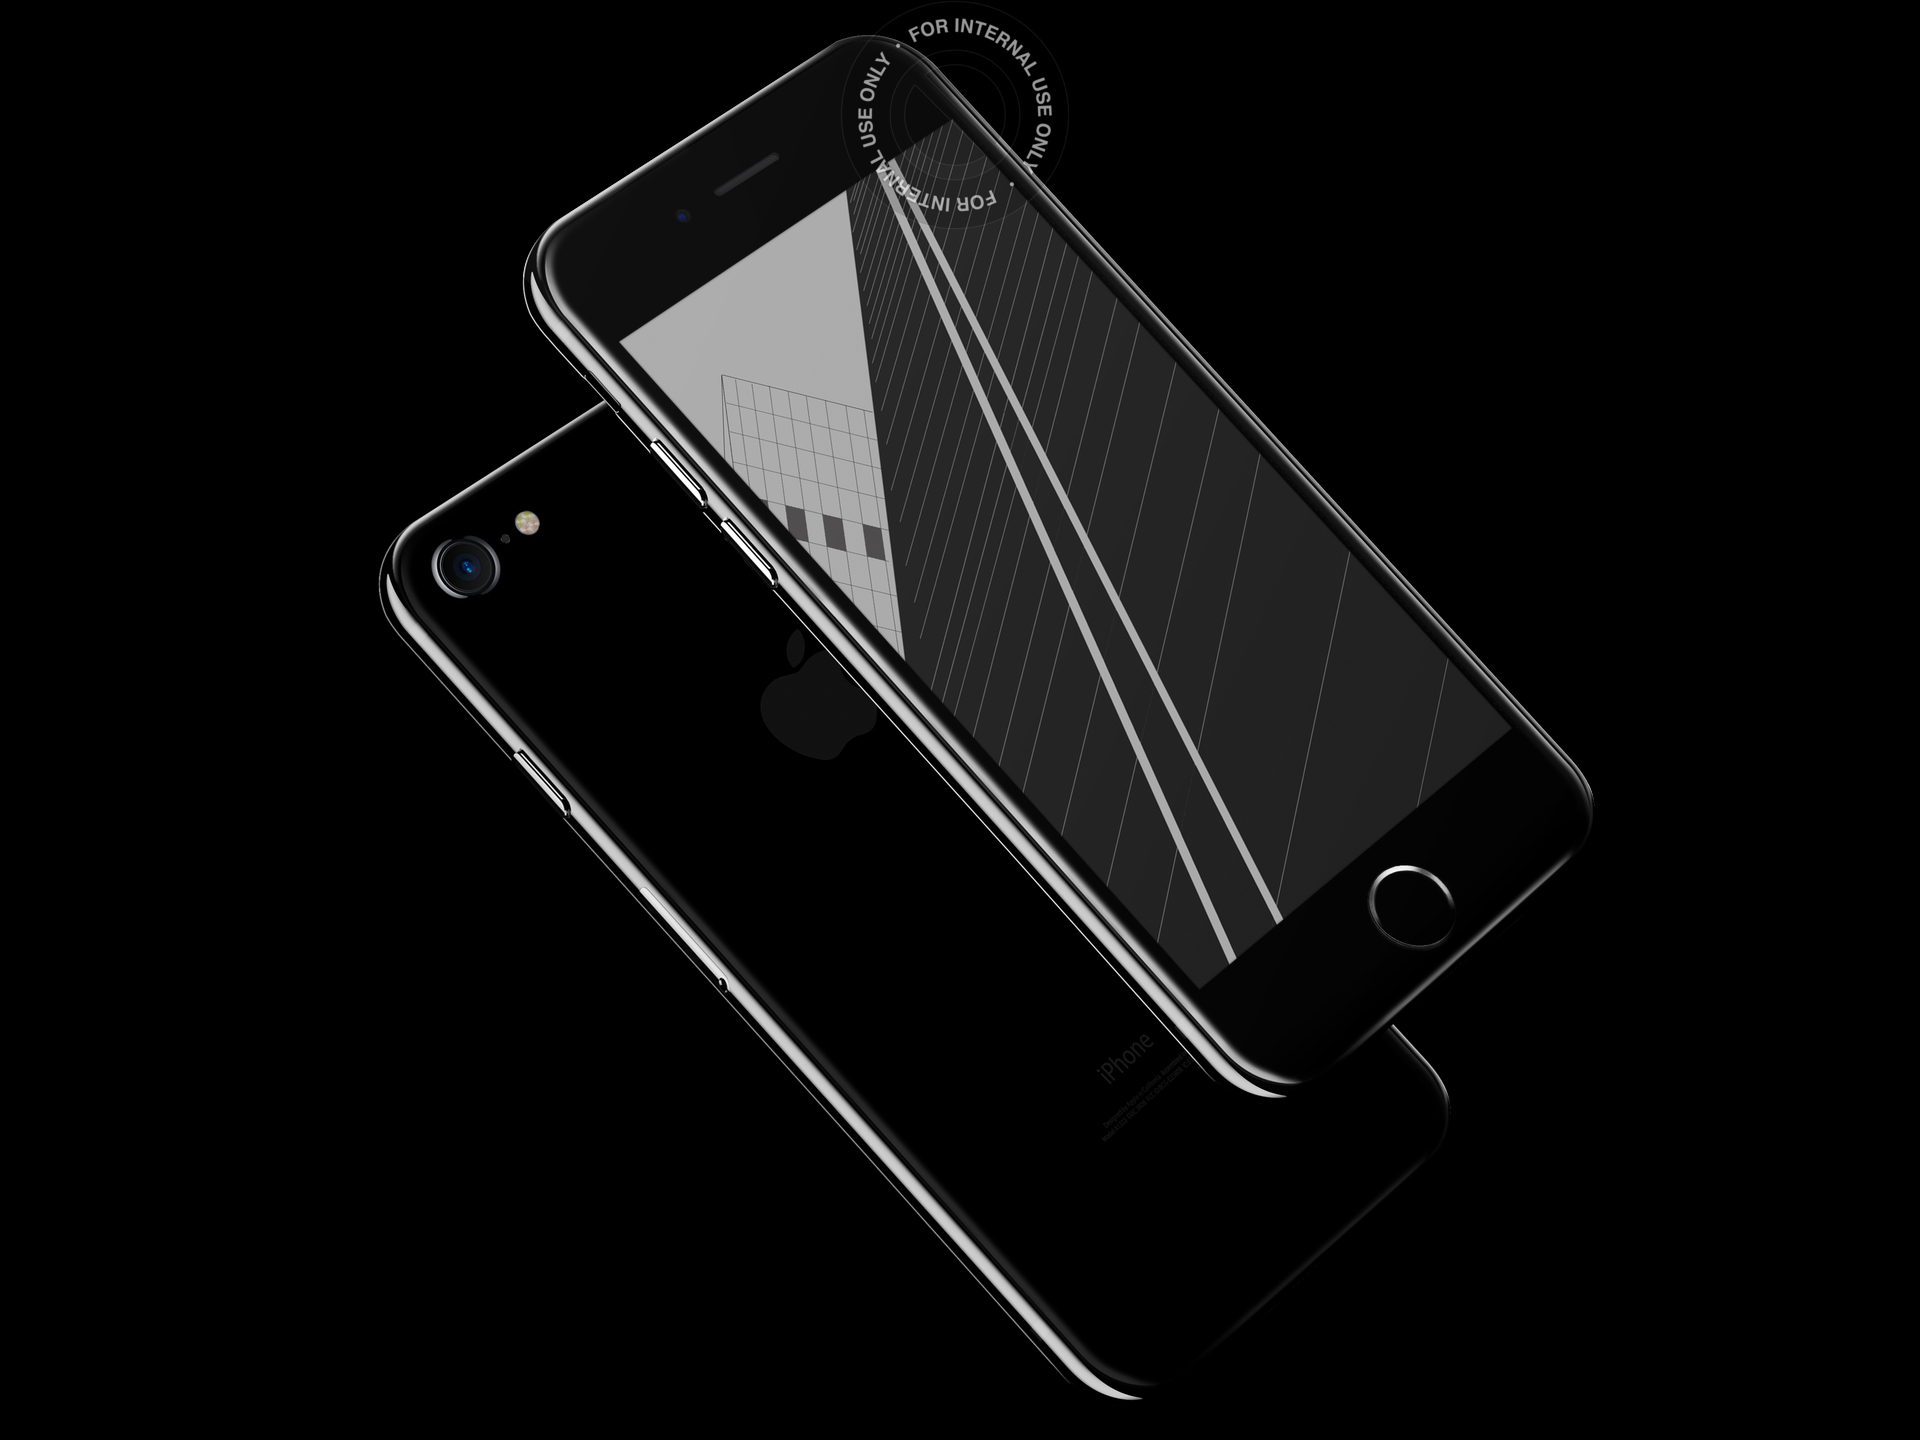 iphone-7-ad-splash